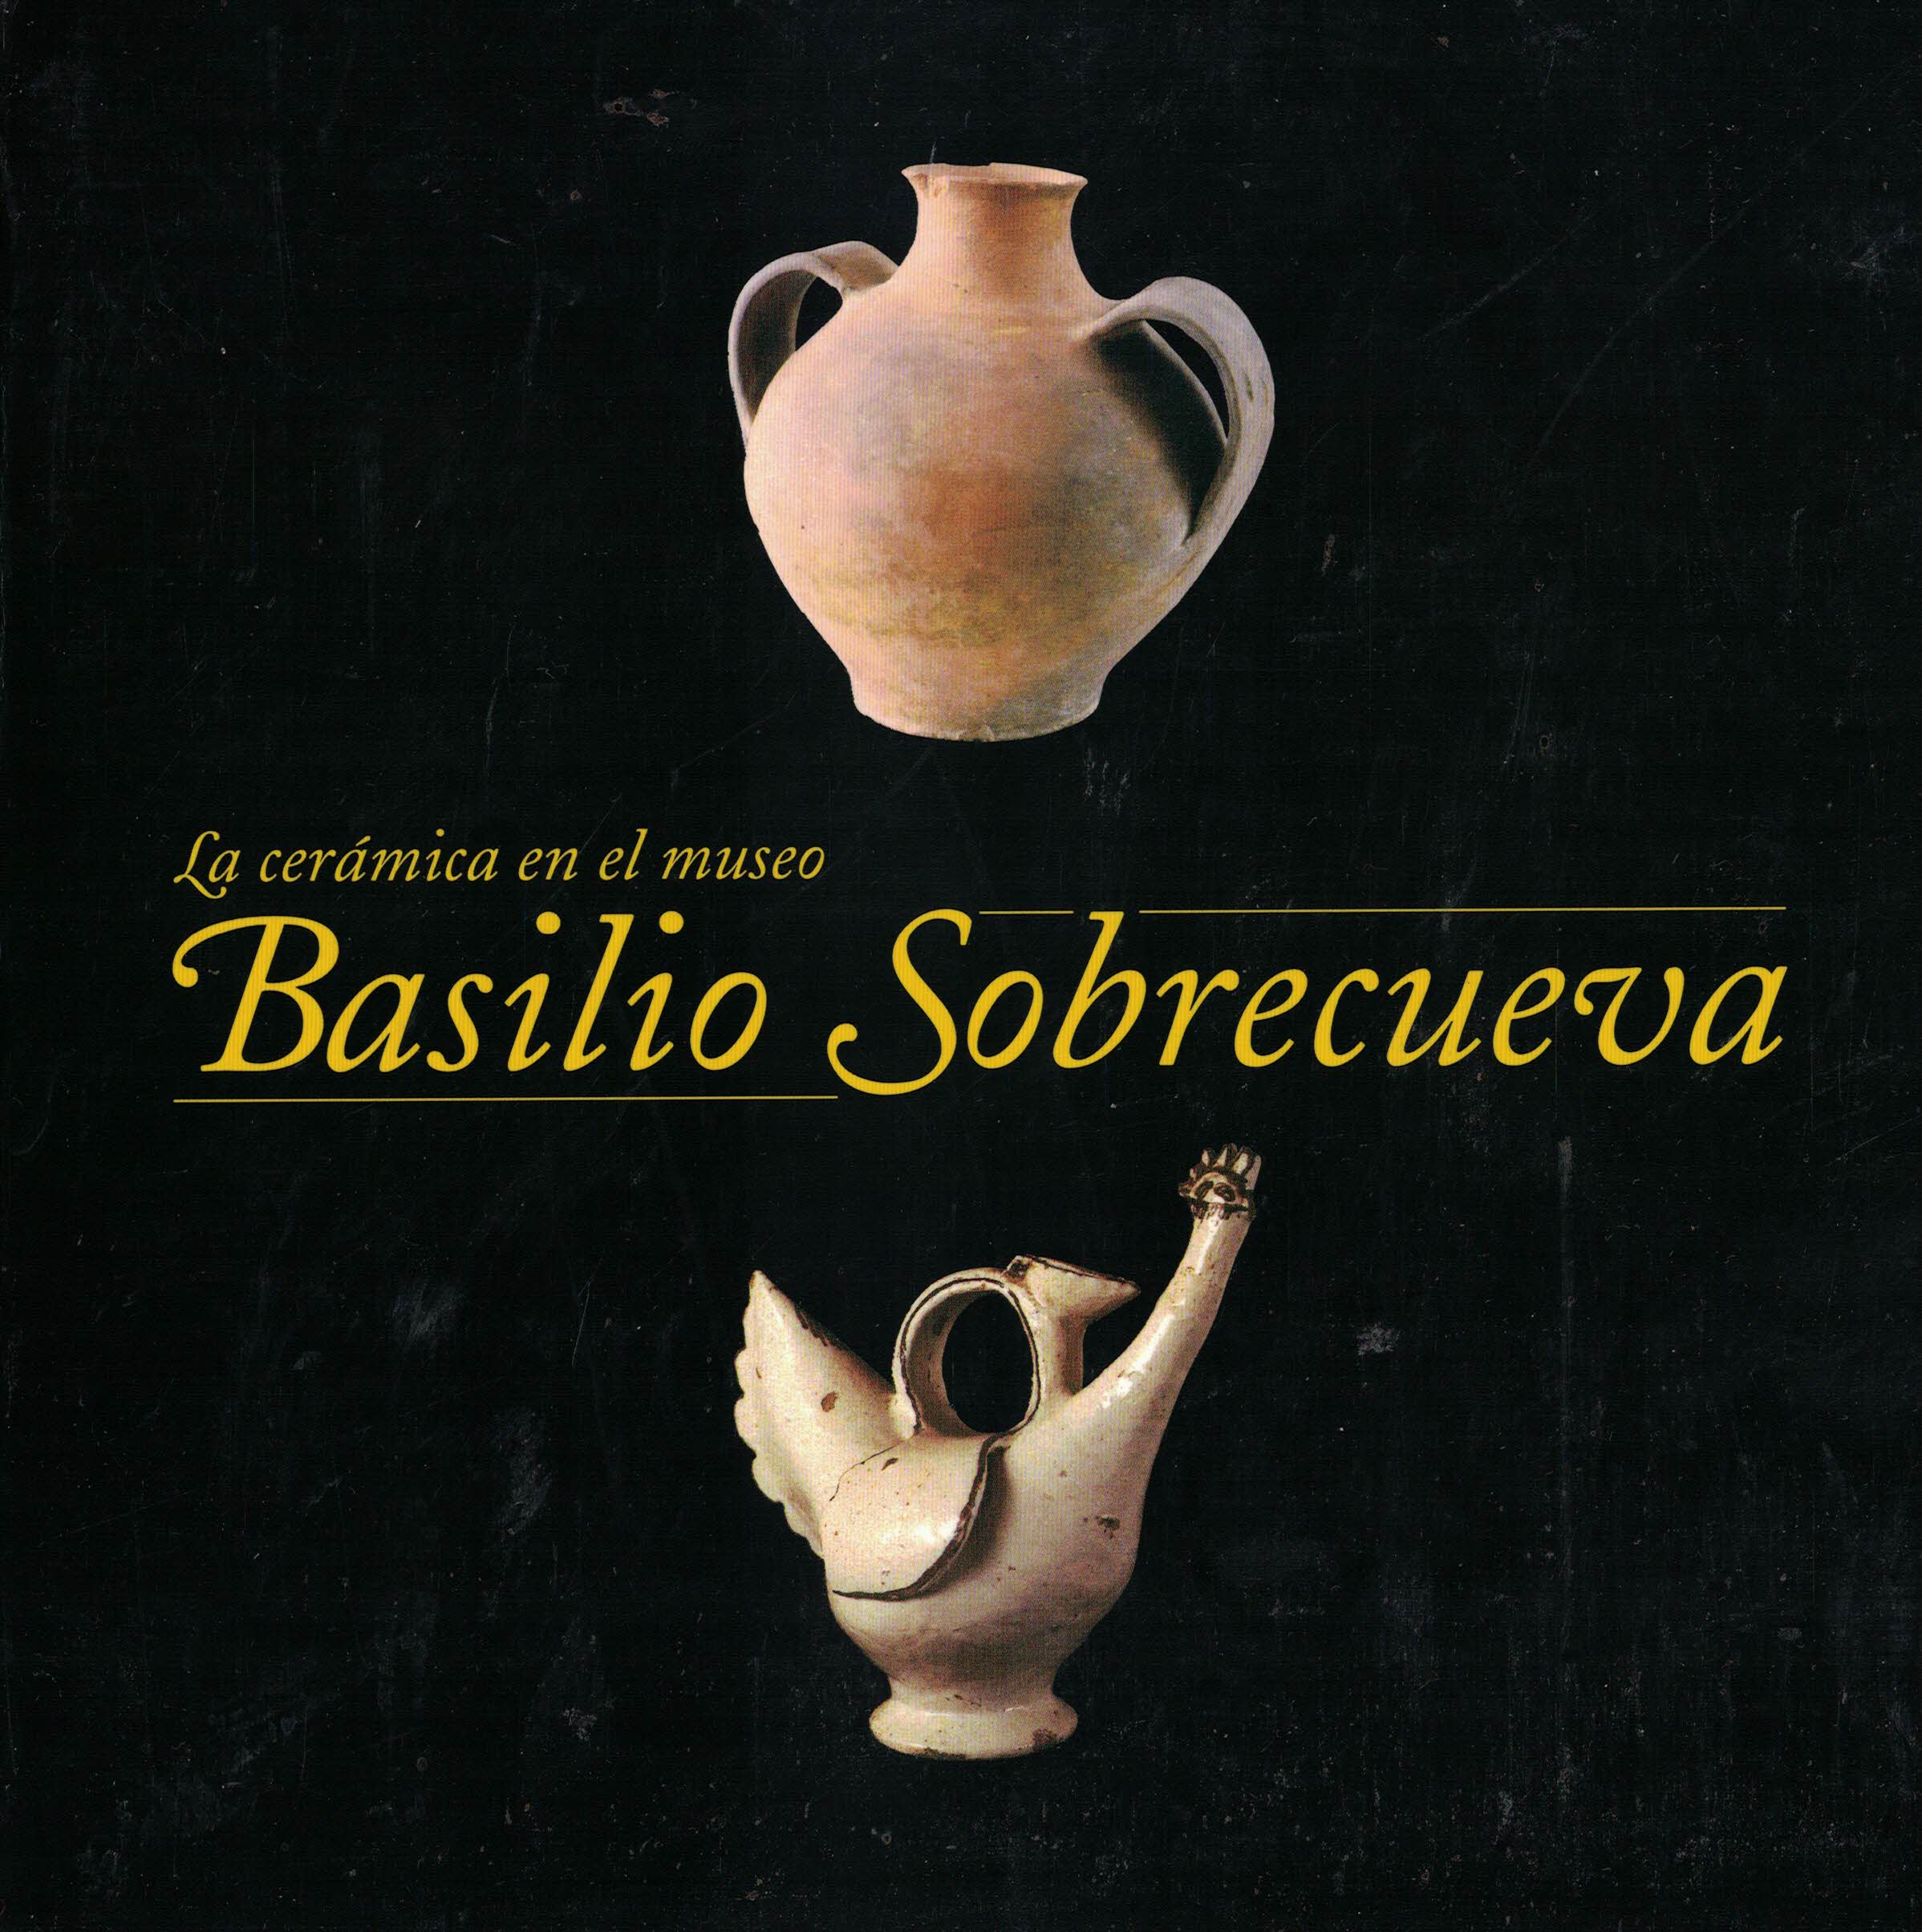 La cerámica en el museo Basilio Sobrecueva